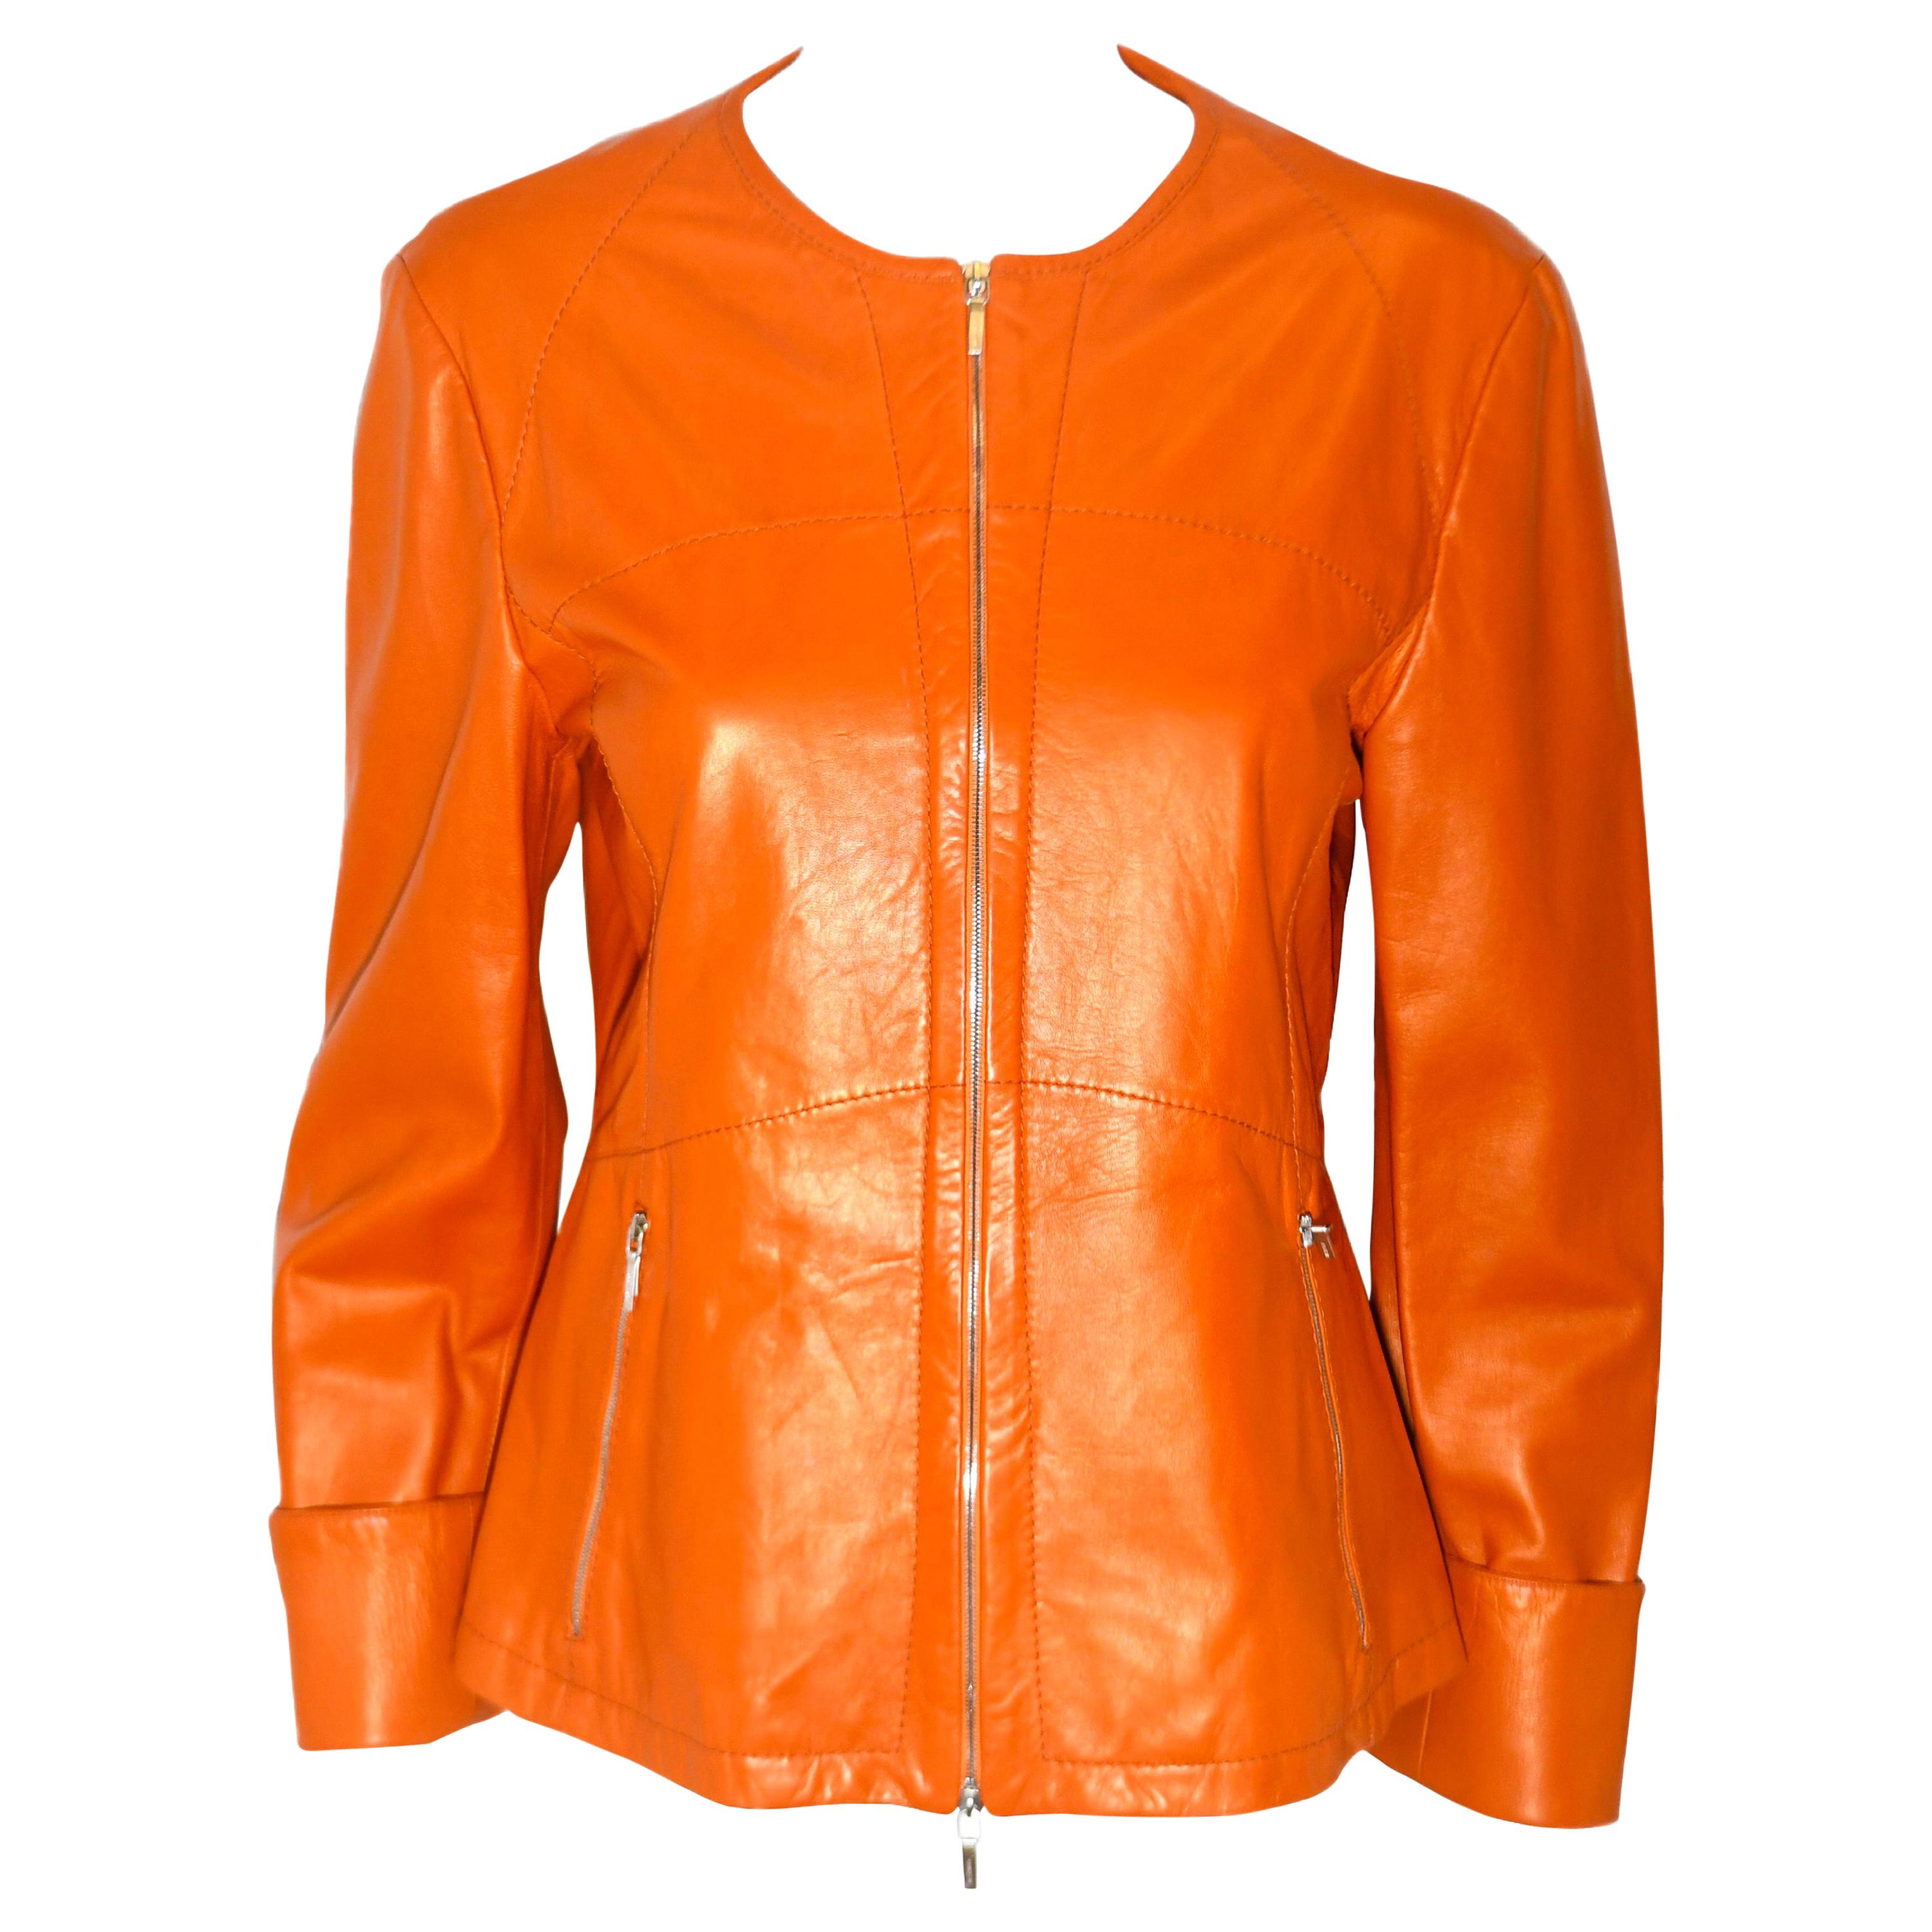 Jil Sander Orange Leather Top Stitched Zipper Jacket For Sale